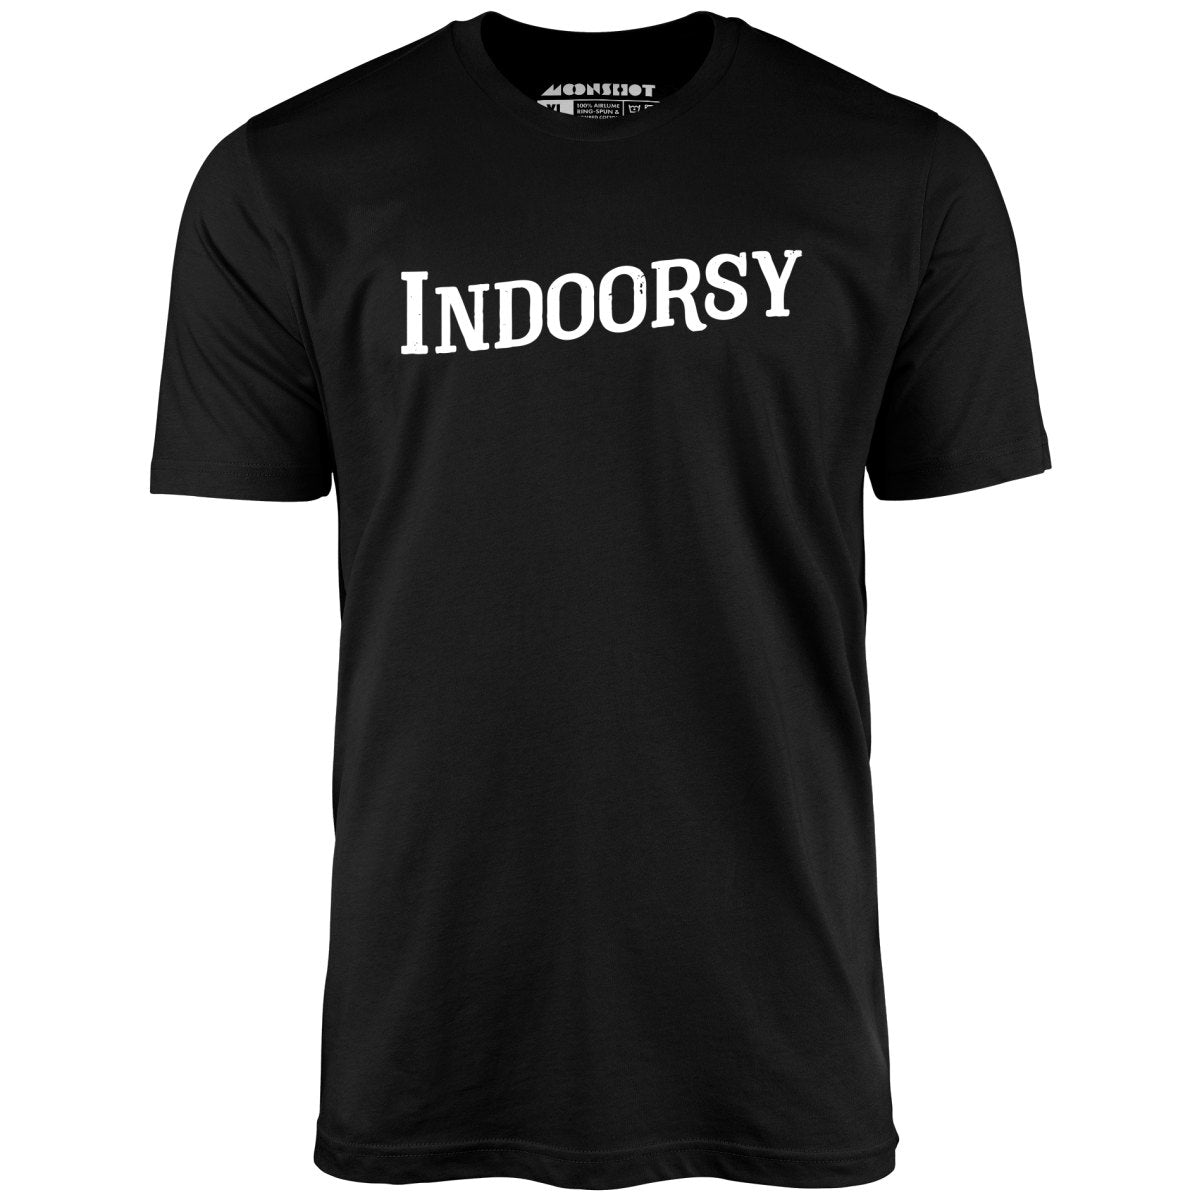 Indoorsy - Unisex T-Shirt